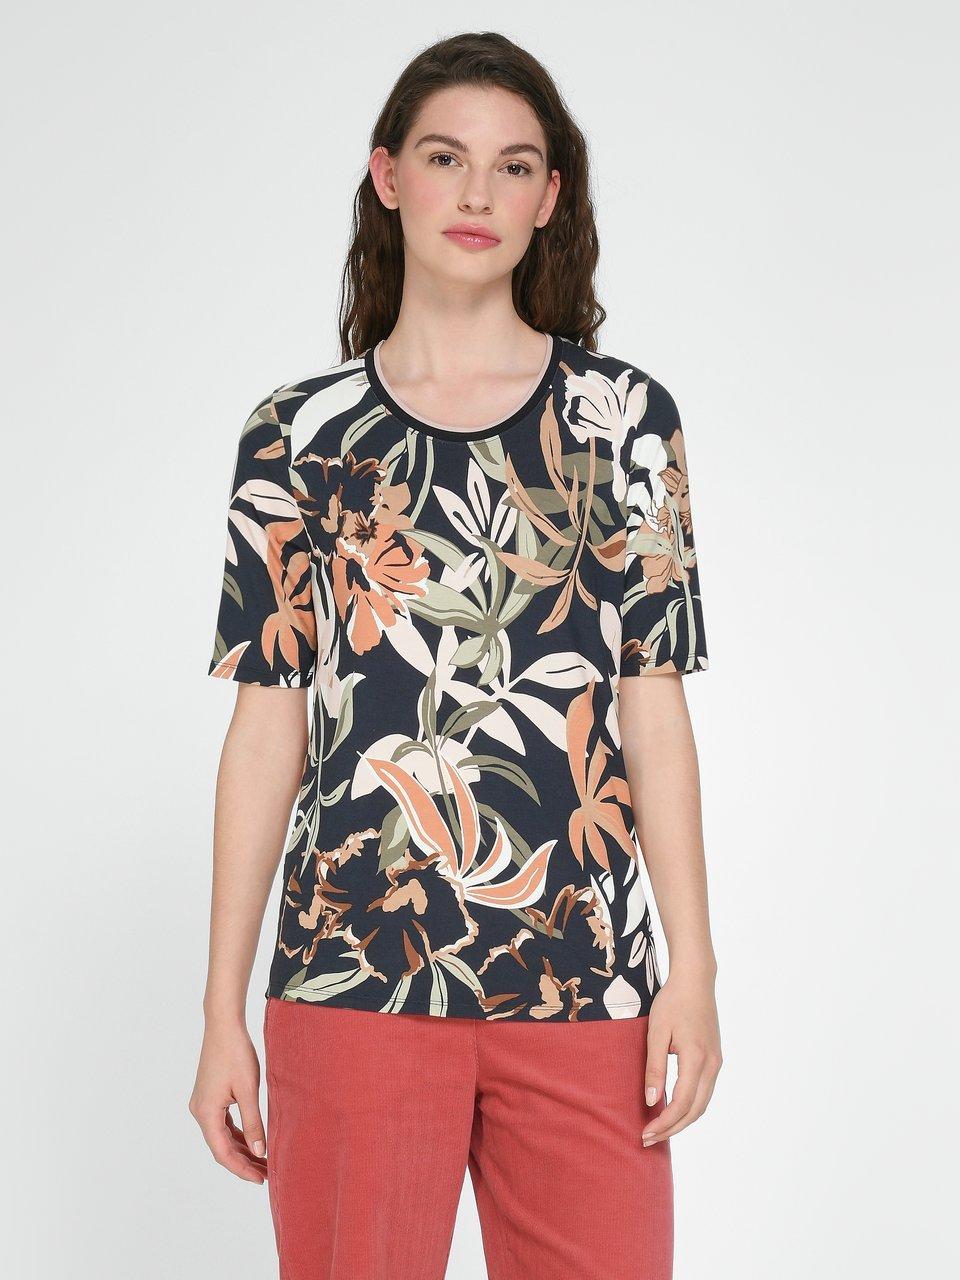 Betty Barclay - Le T-shirt avec grandes fleurs stylisées